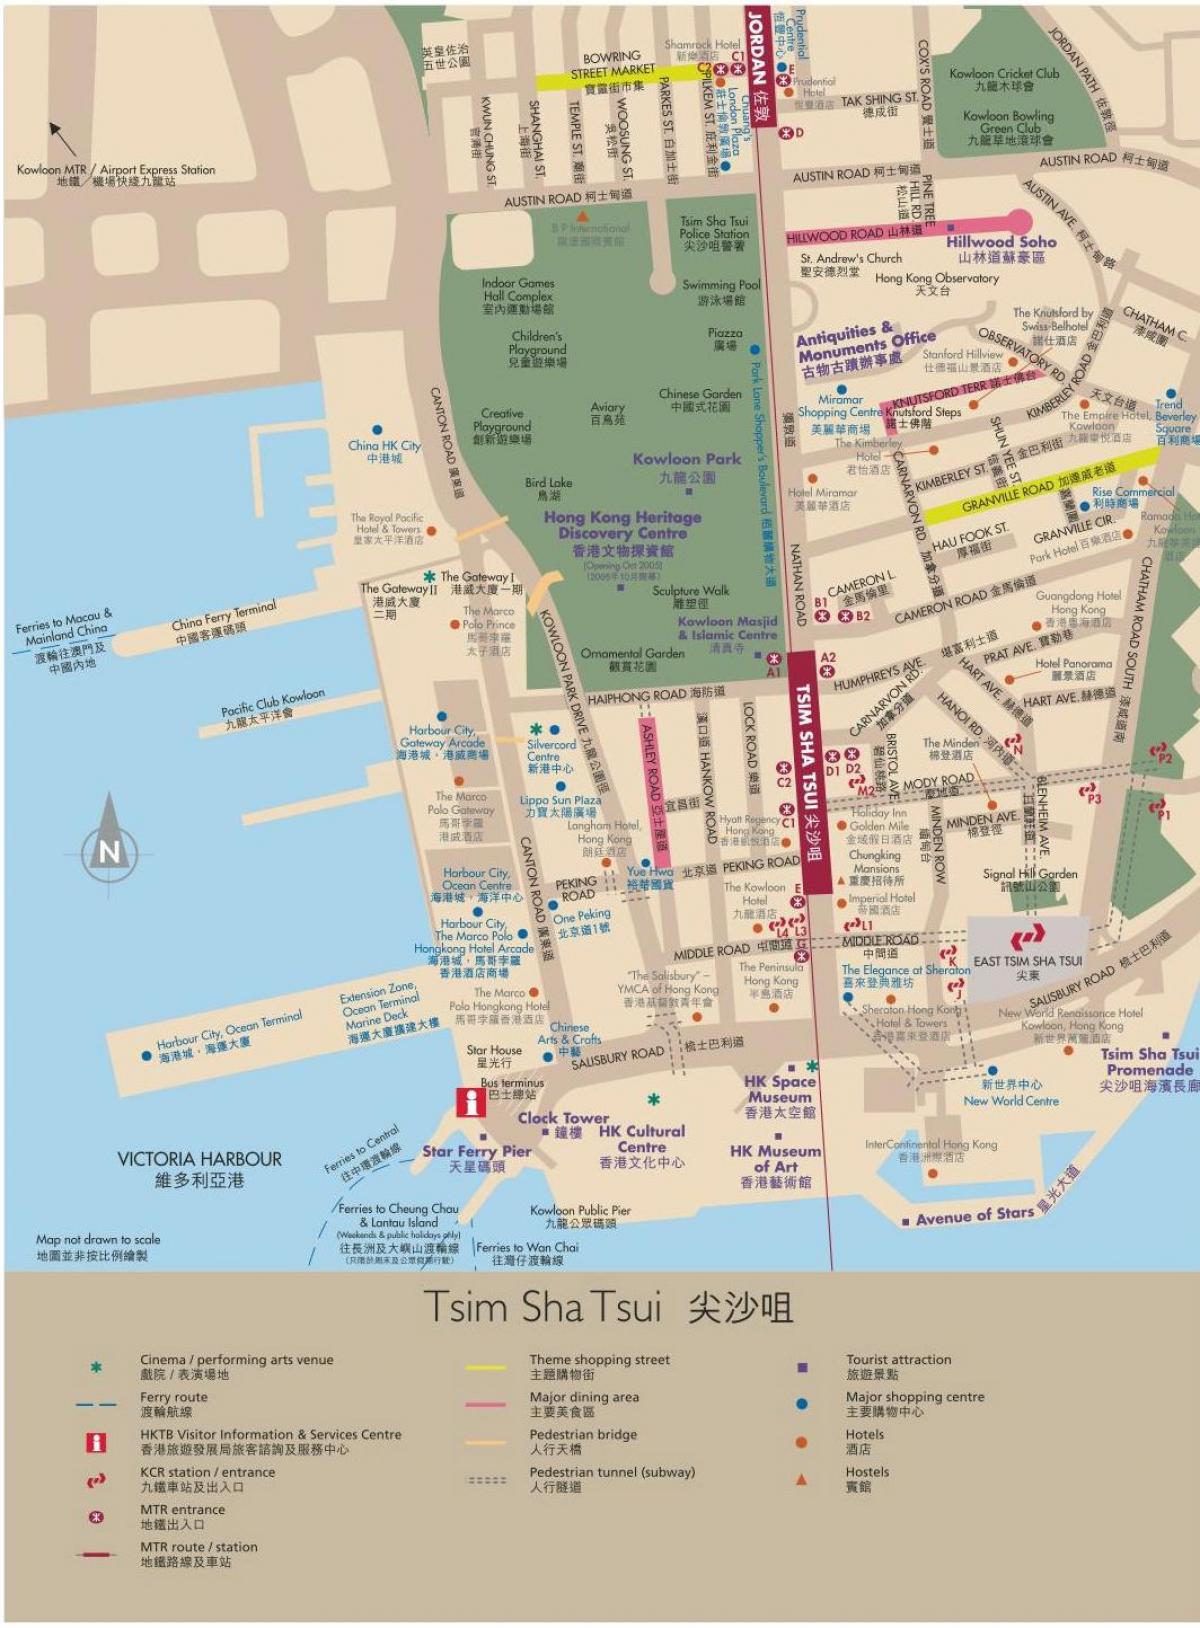 הונג קונג, קאולון מפה